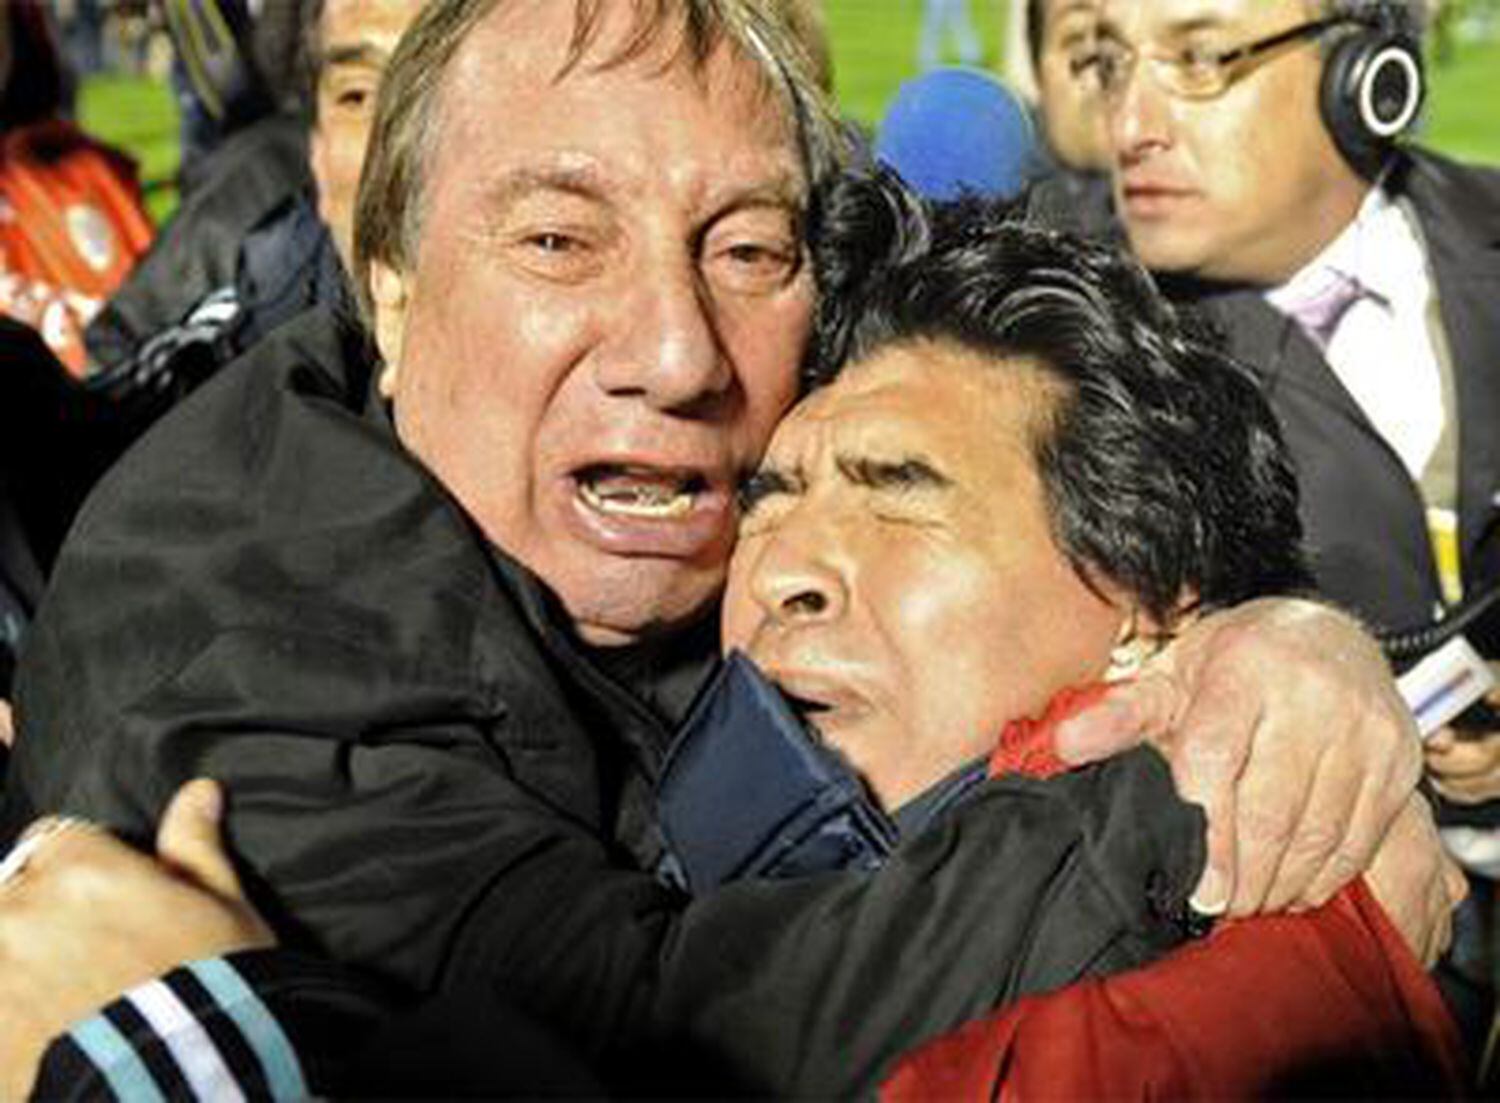 Bilardo y Maradona se abrazan emocionados al final del partido contra Uruguay, que clasificó a la selección argentina para el Mundial de Sudáfrica.